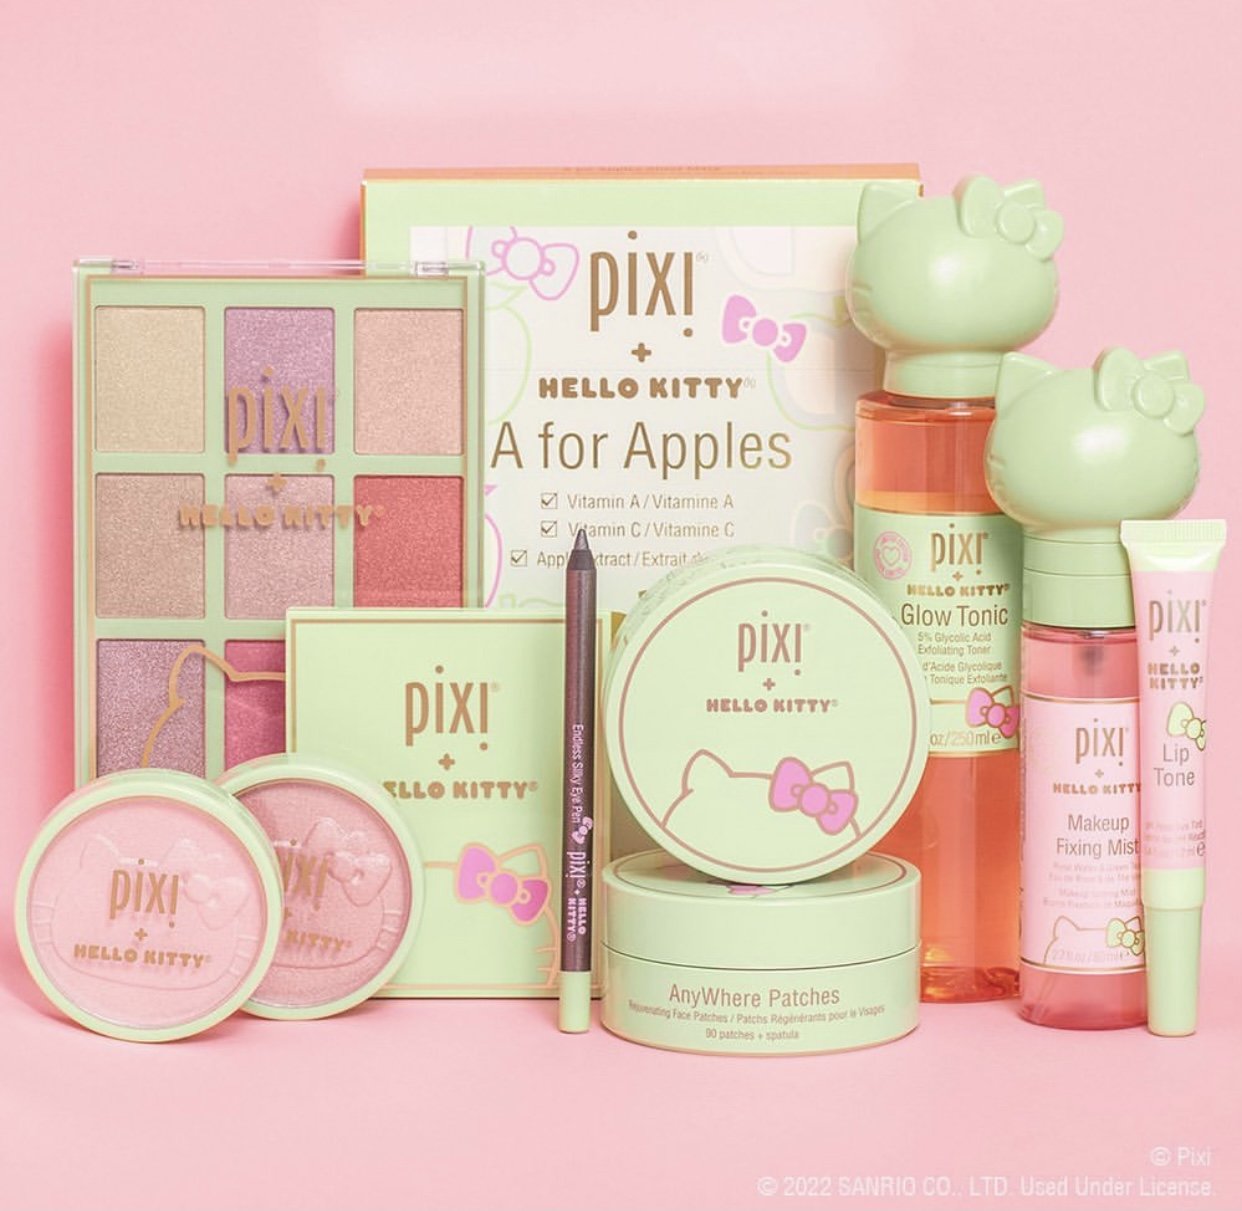 Pixi X Hello Kitty Bow Meets Glow Skincare Set